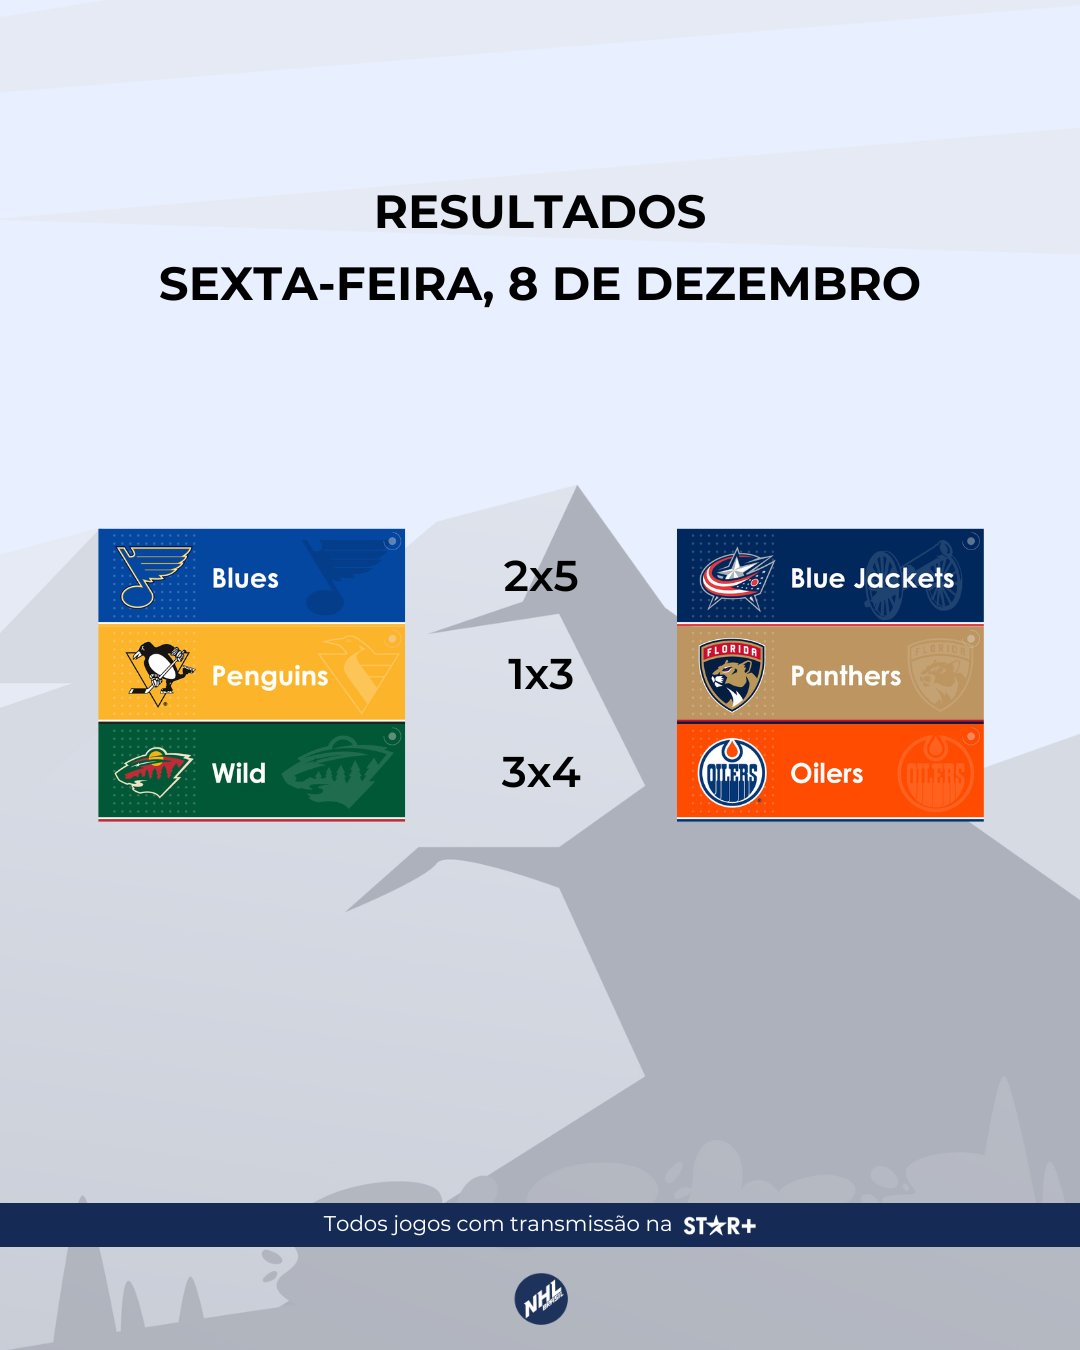 NHL Brasil (@NHLBrasil) / X